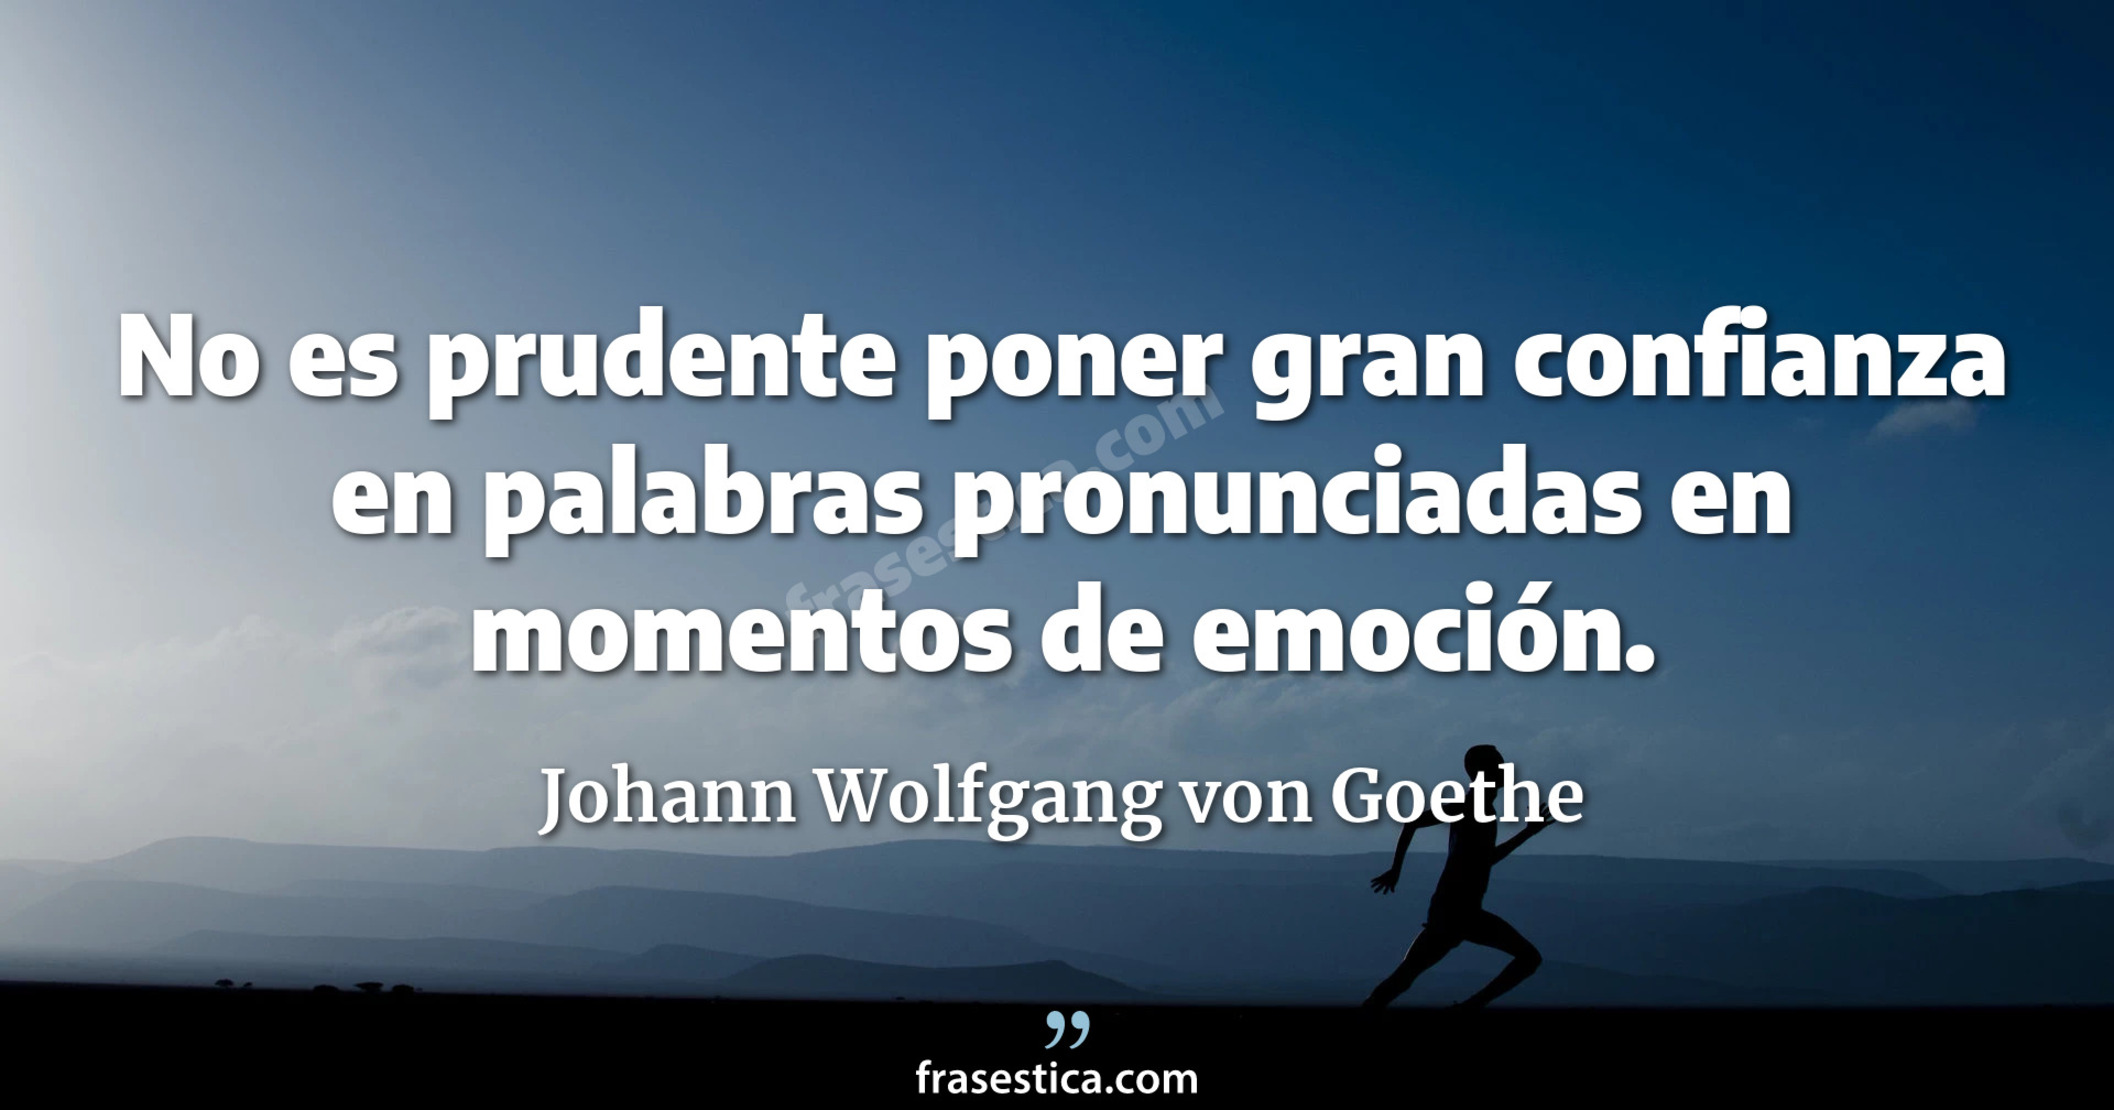 No es prudente poner gran confianza en palabras pronunciadas en momentos de emoción. - Johann Wolfgang von Goethe